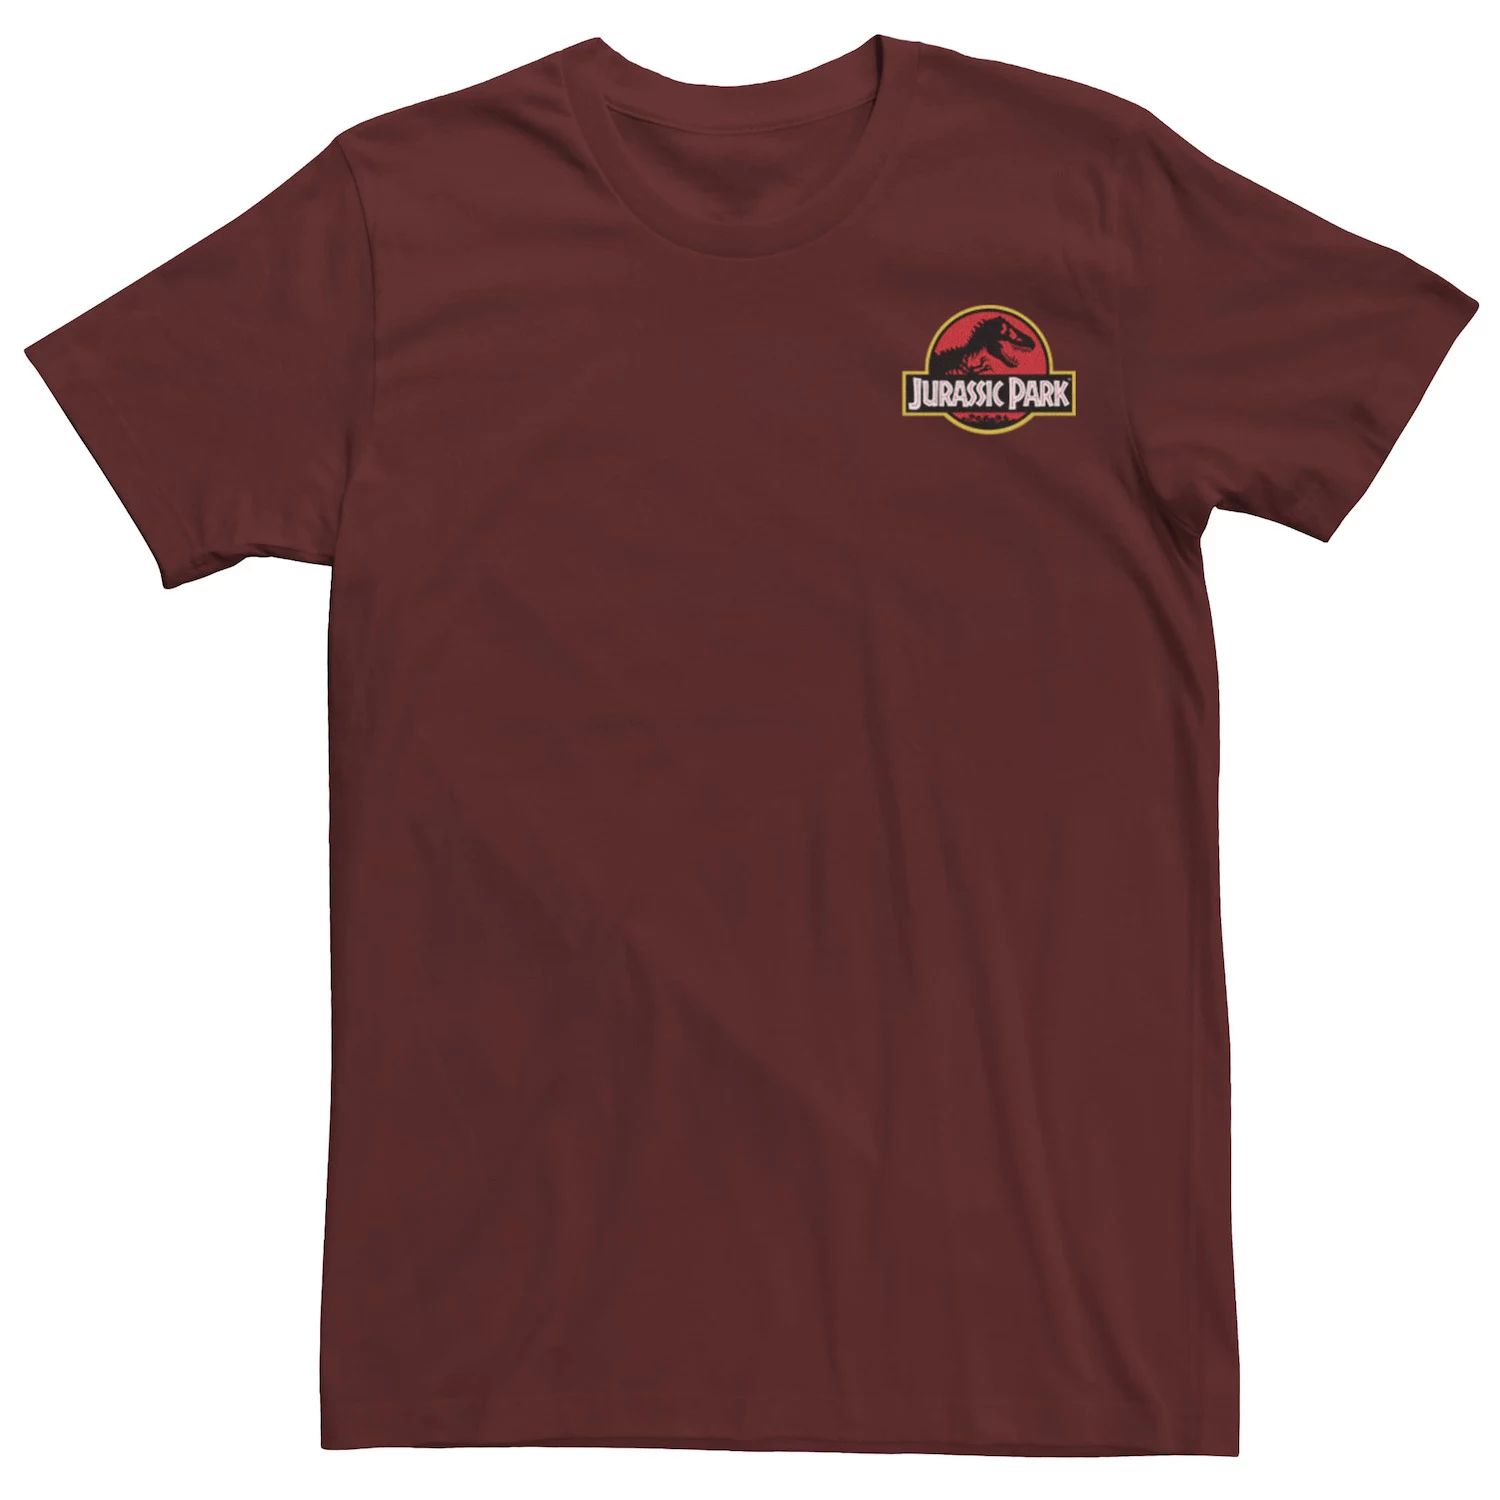 Мужская красно-желтая футболка с карманами и логотипом Jurassic Park Licensed Character цена и фото